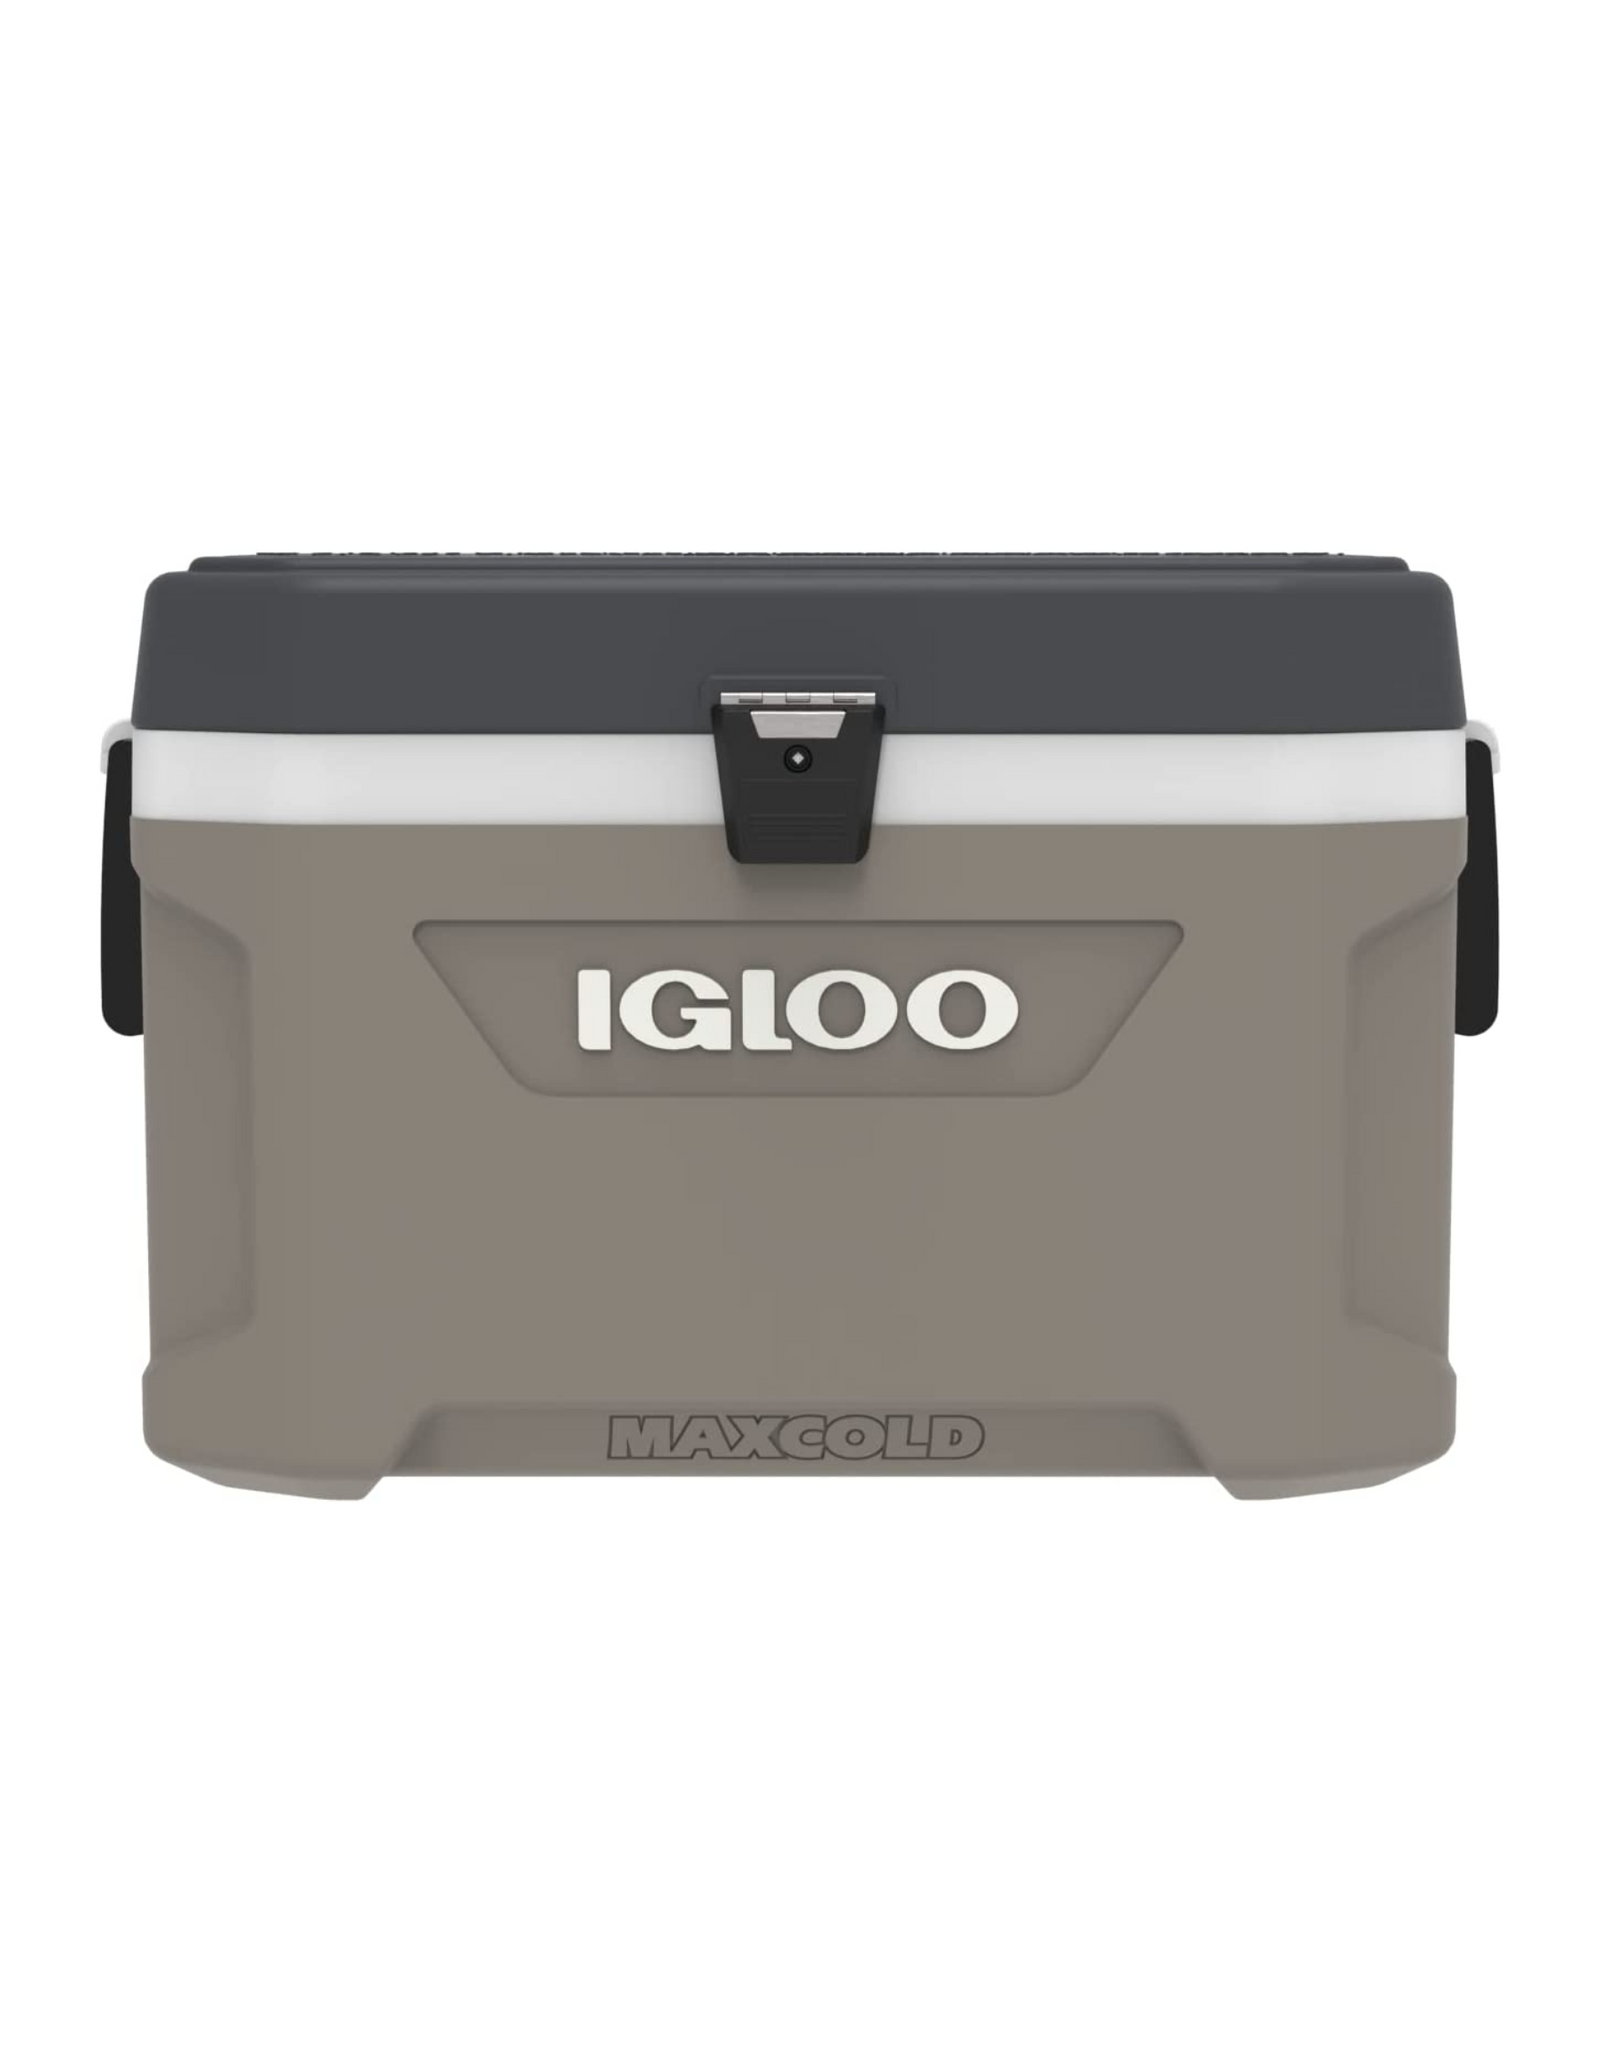 Igloo Sportsman 30-150 Qt, Hardsided Coolers, Heavy-Duty, High Performance, 54 Qt Capacity, Standstone